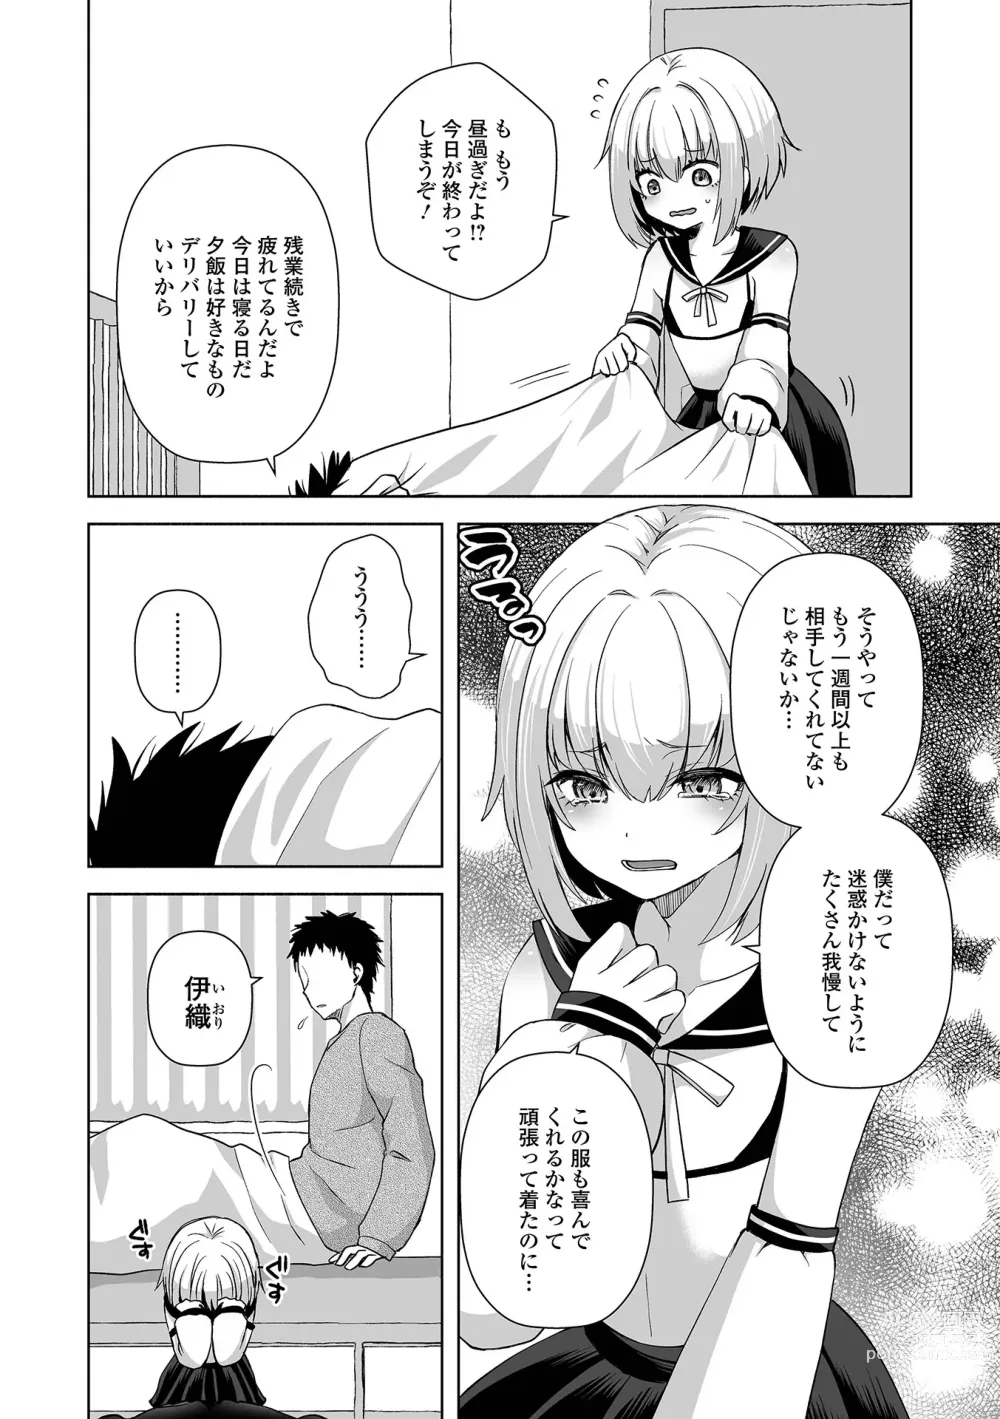 Page 20 of manga Gekkan Web Otoko no Ko-llection! S Vol. 95